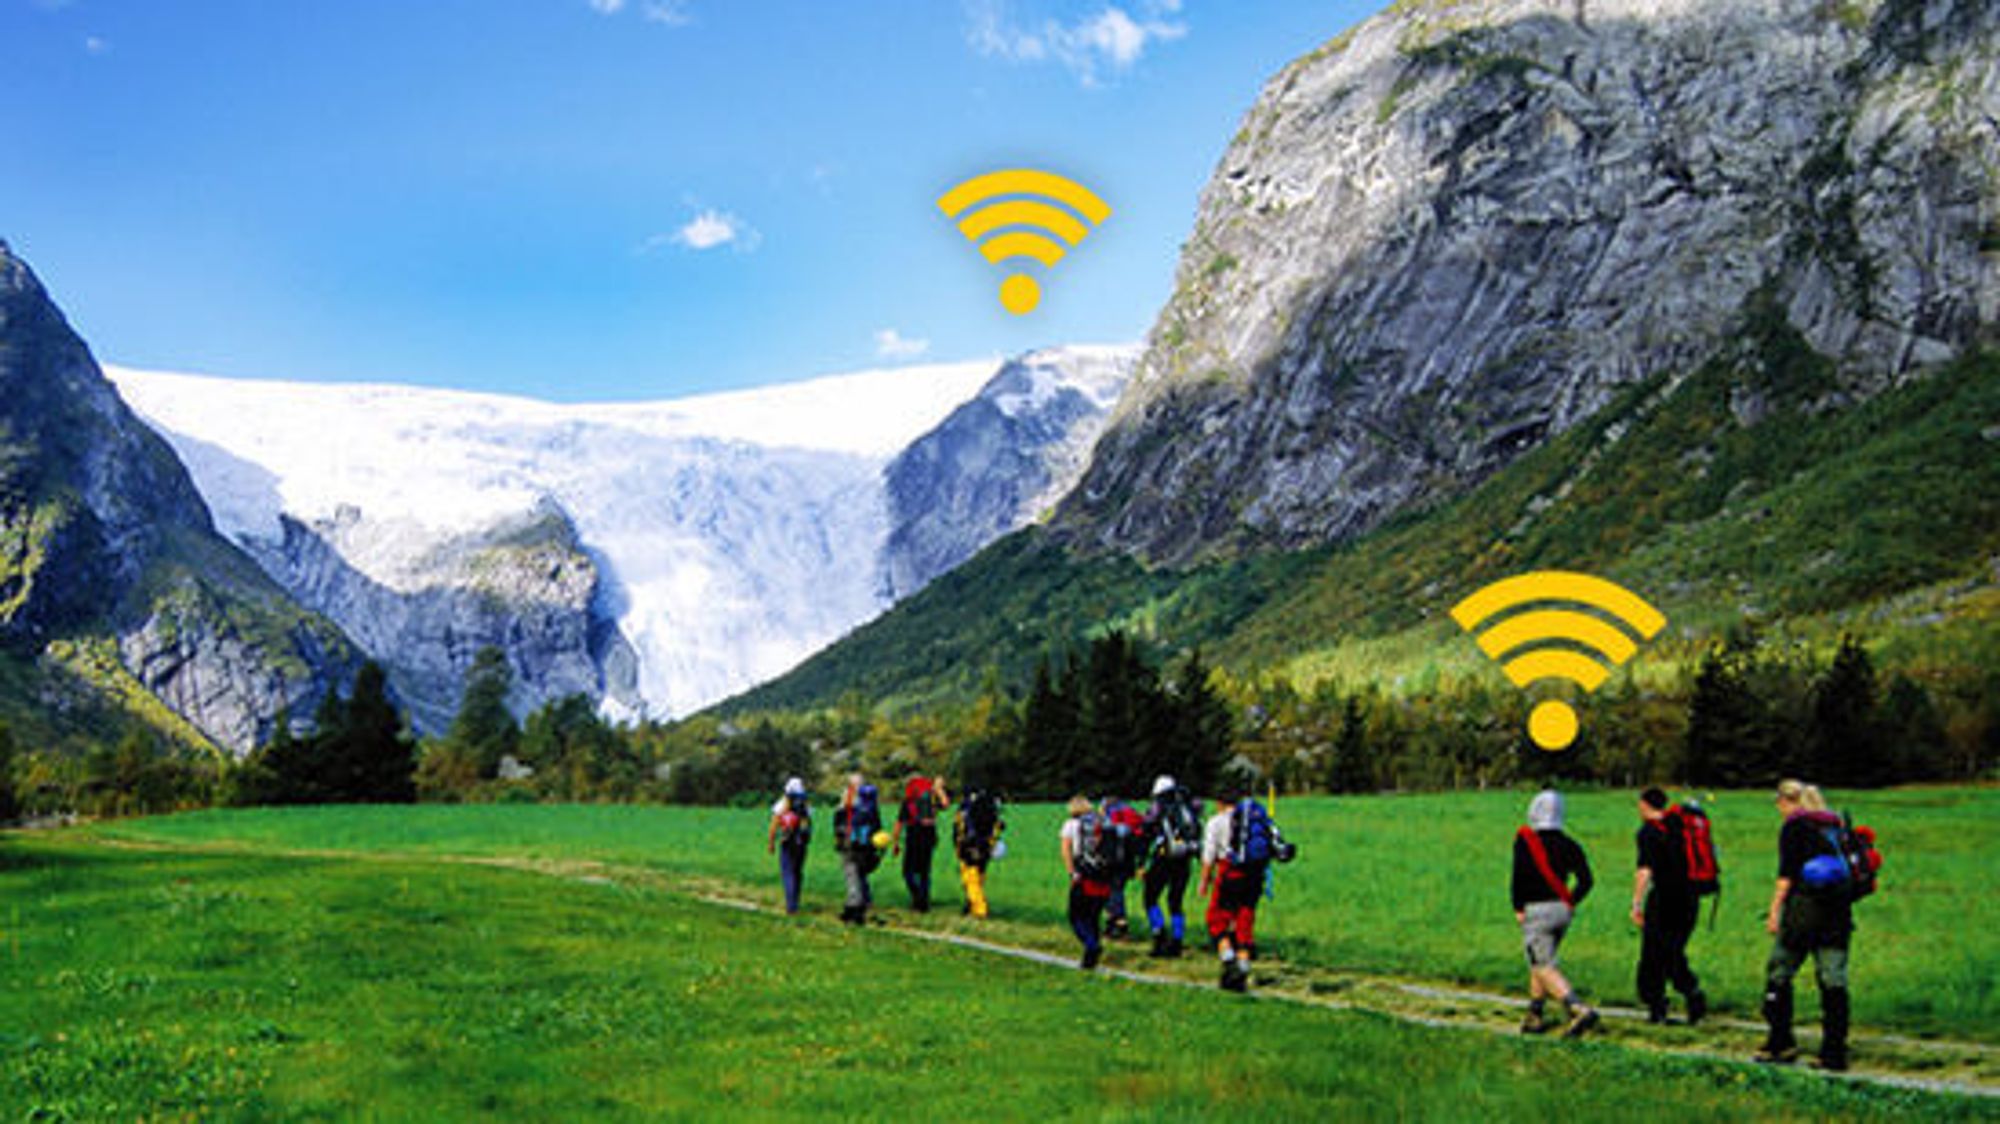 Ice.net lover mobilt bredbånd også på høye fjell og i dype daler.